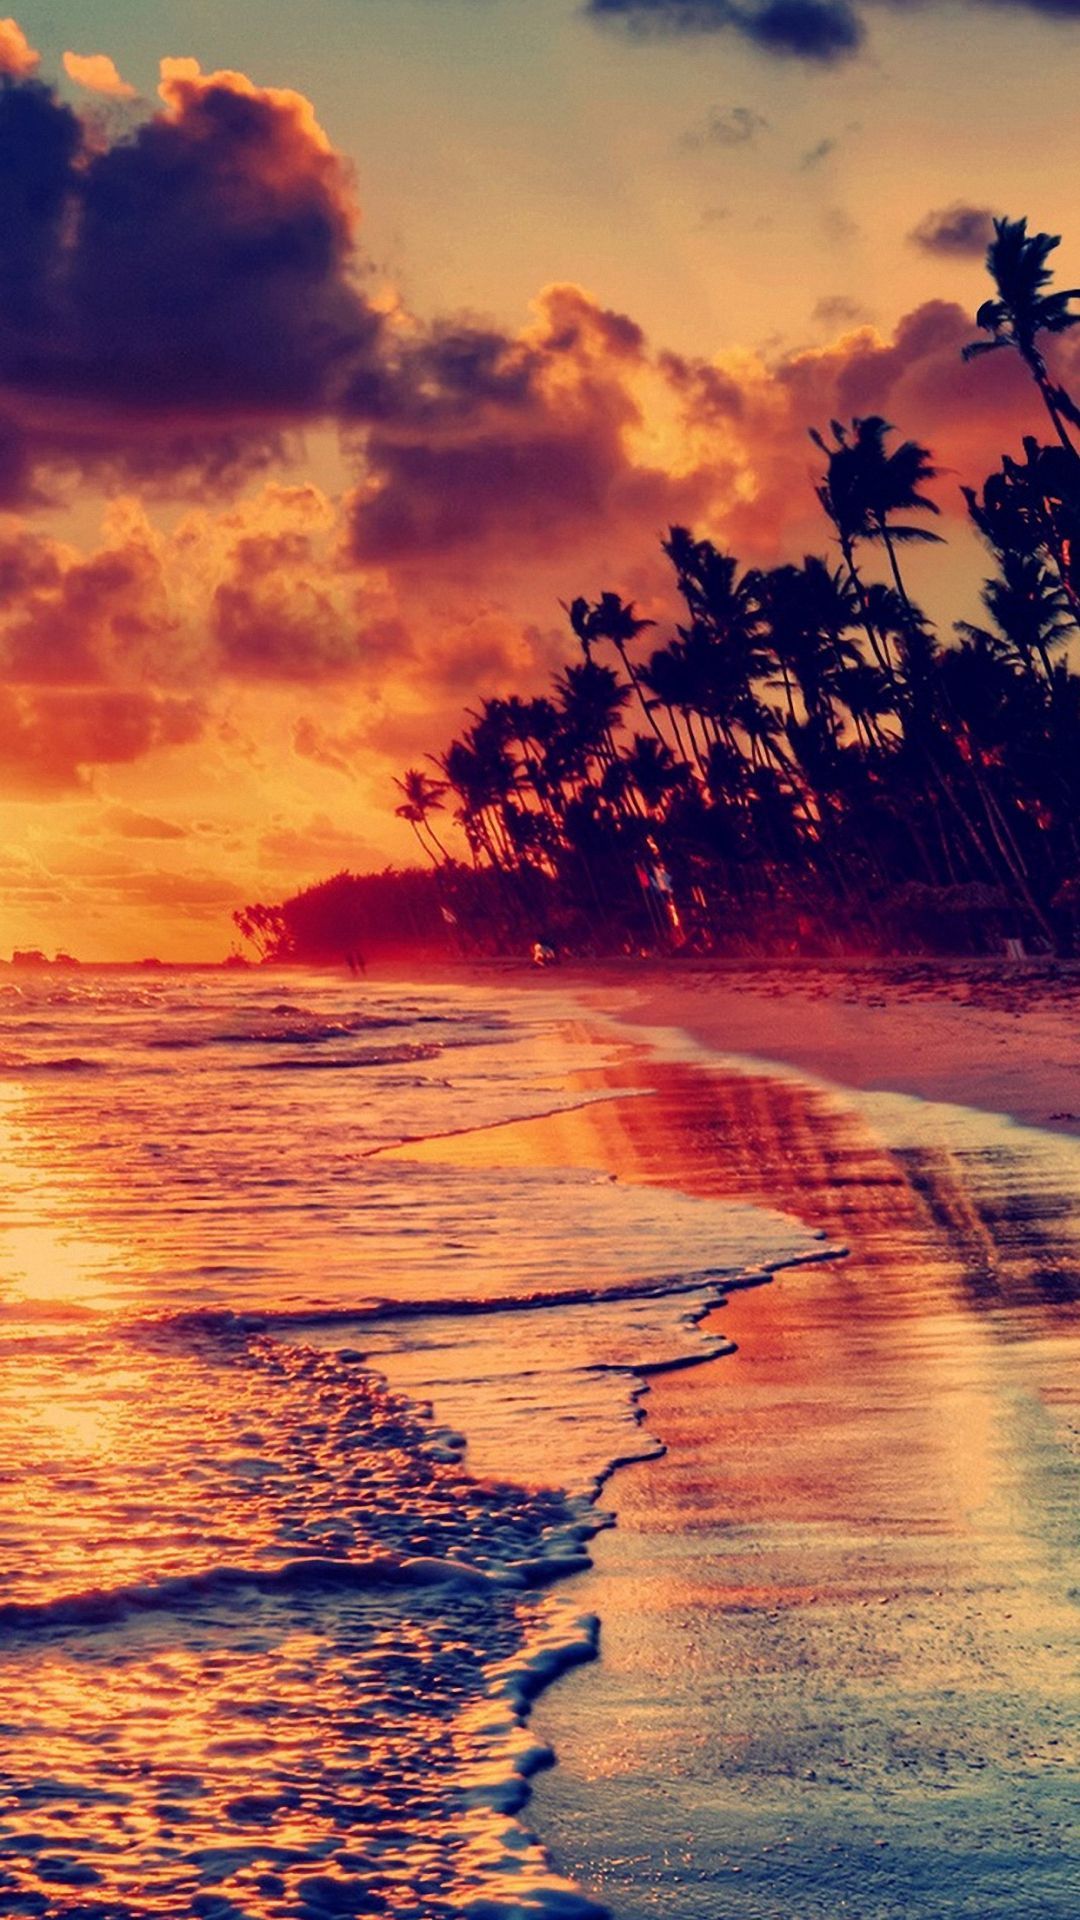 Pretty Image. Sunset wallpaper, Beach wallpaper, Nature wallpaper